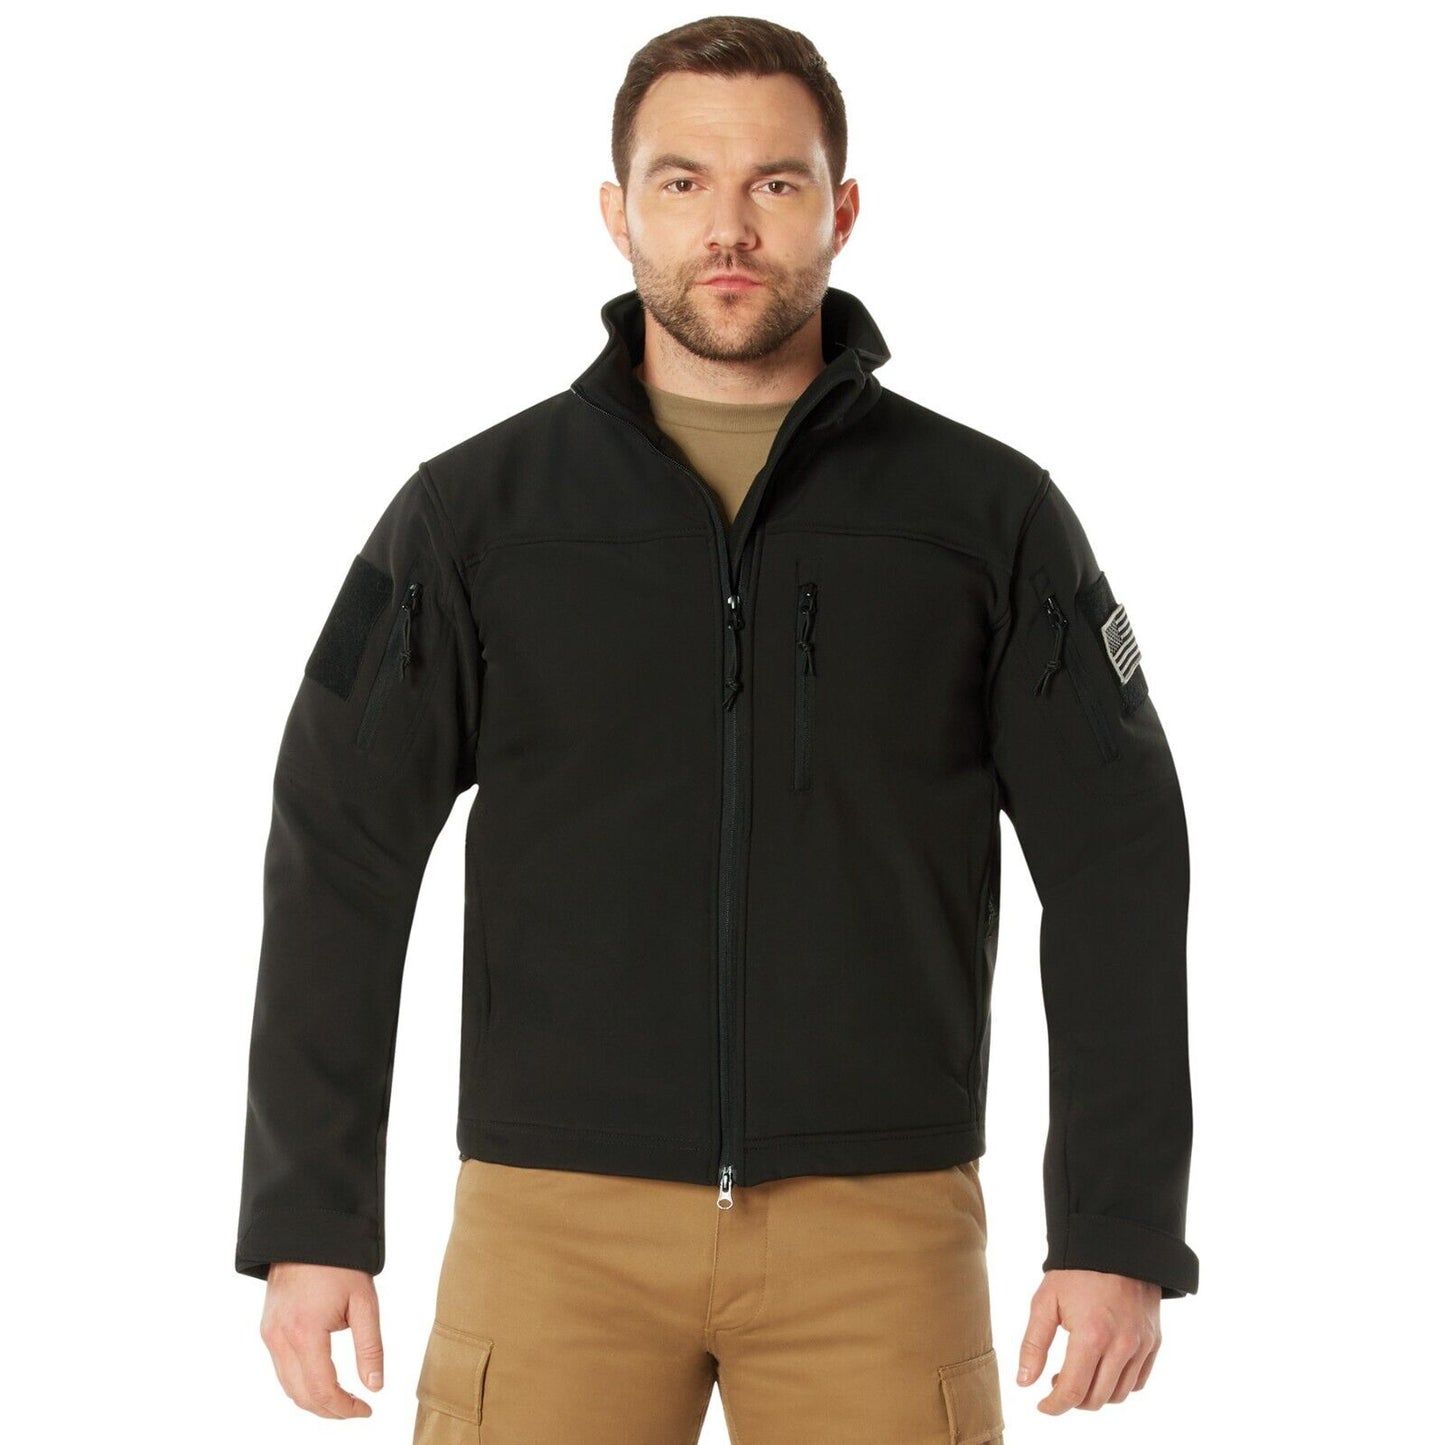 Men's Tactical Covert Ops Lightweight Soft Shell Waterproof Jacket